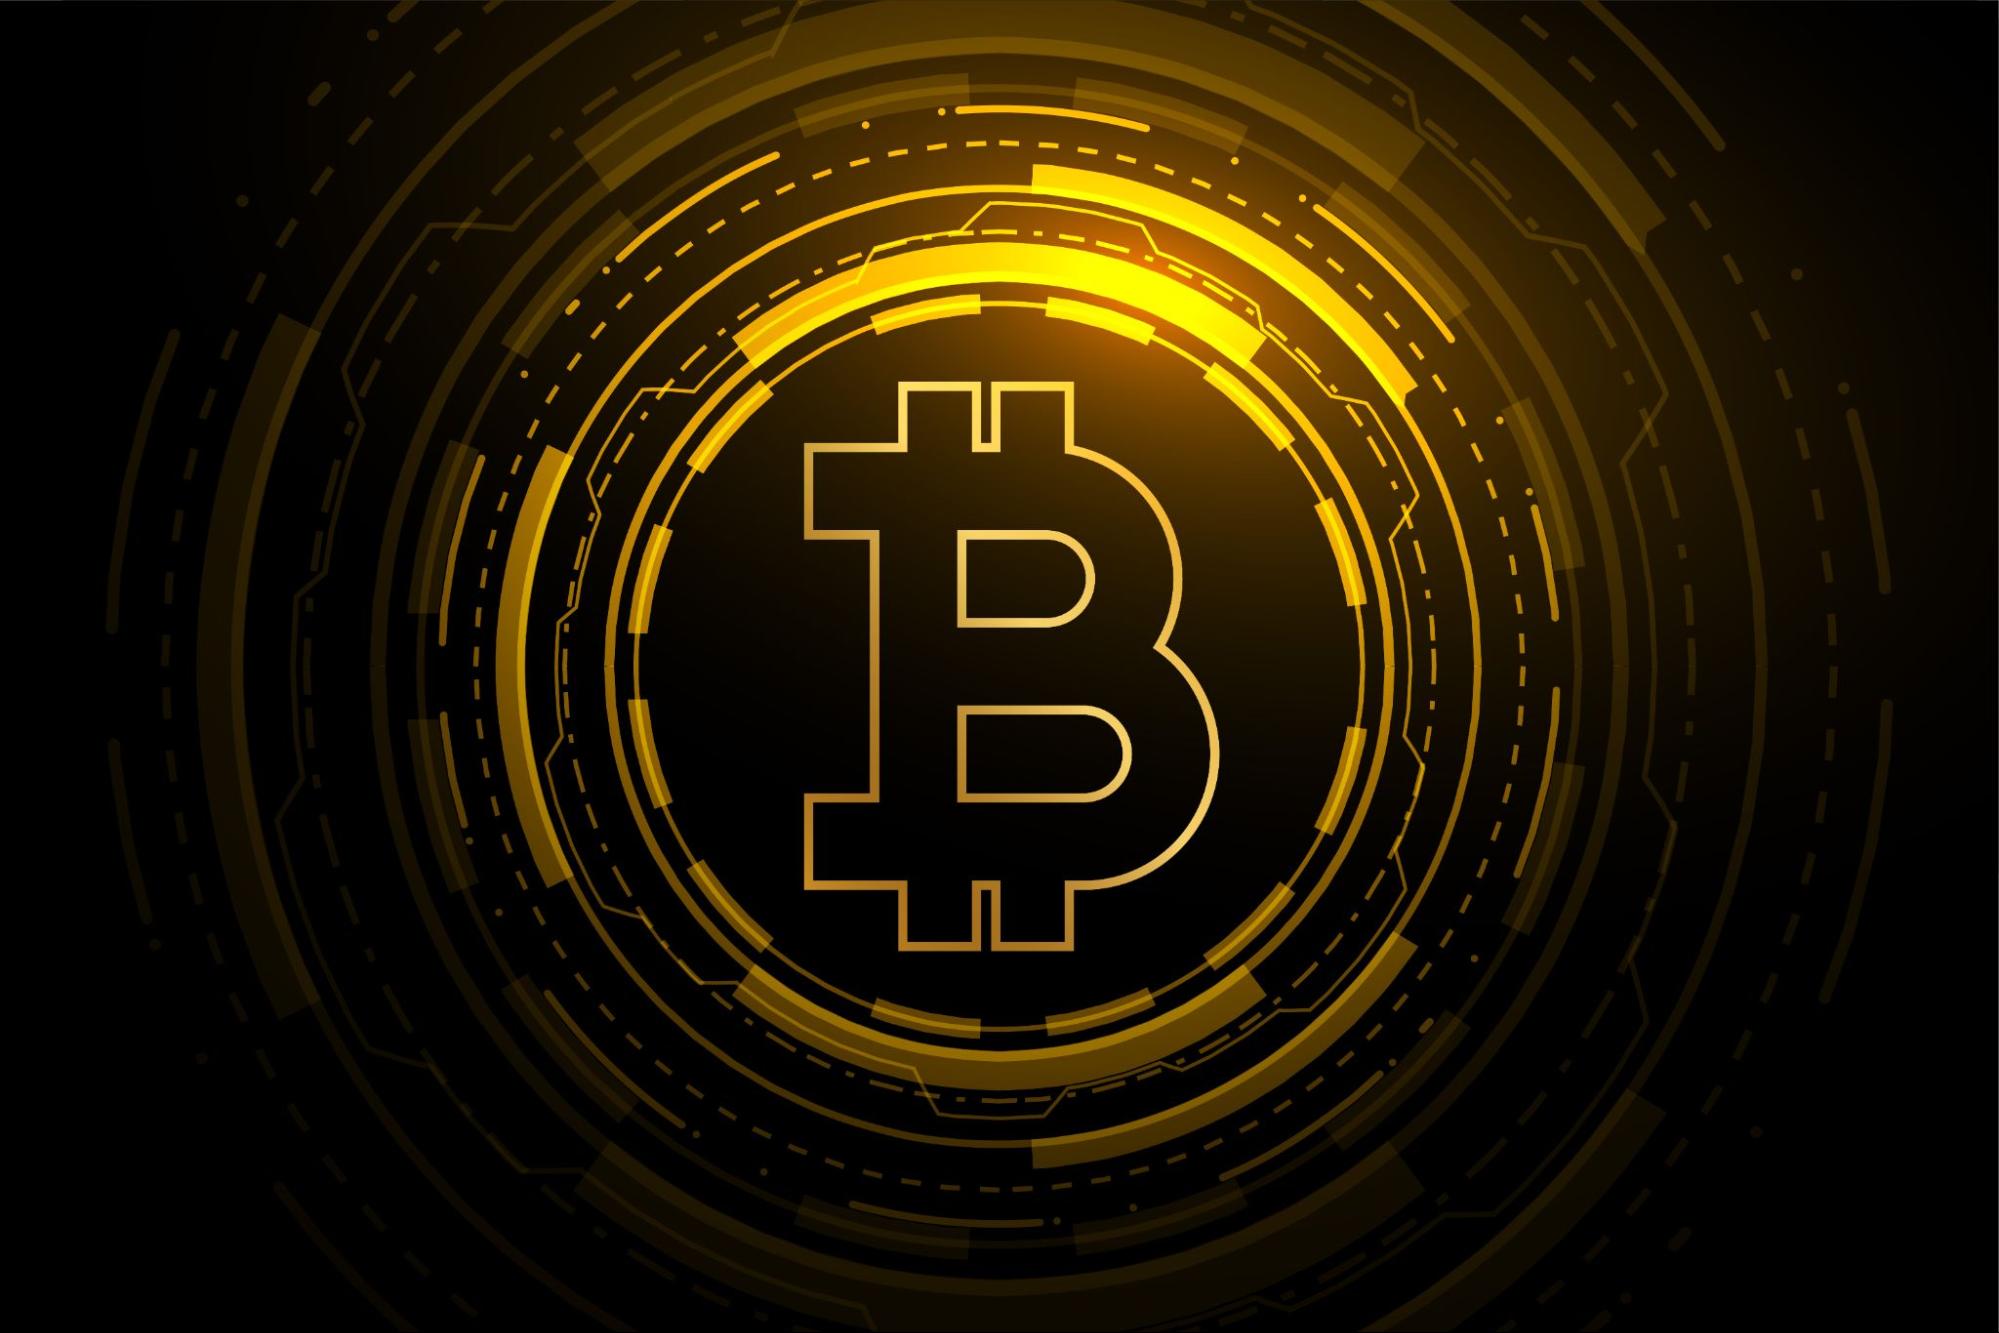 A black and golden Bitcoin logo